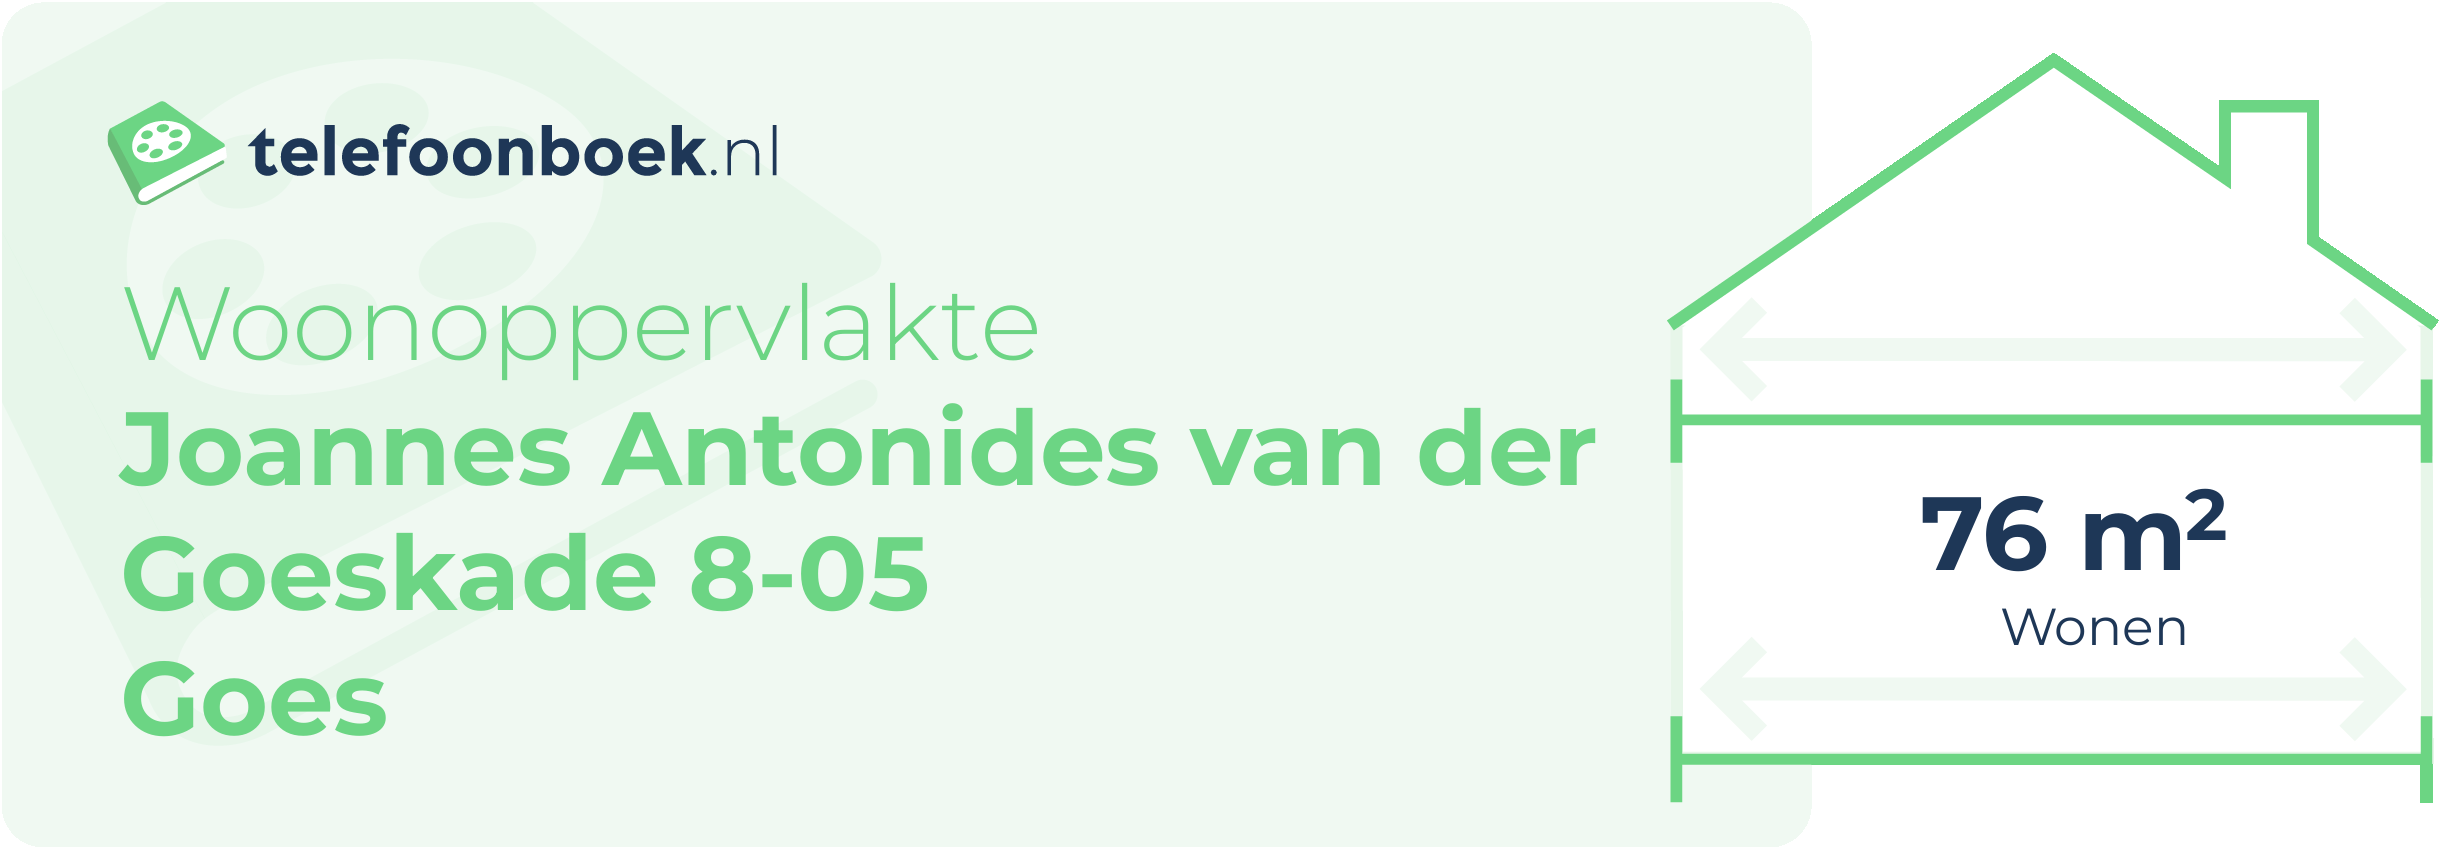 Woonoppervlakte Joannes Antonides Van Der Goeskade 8-05 Goes